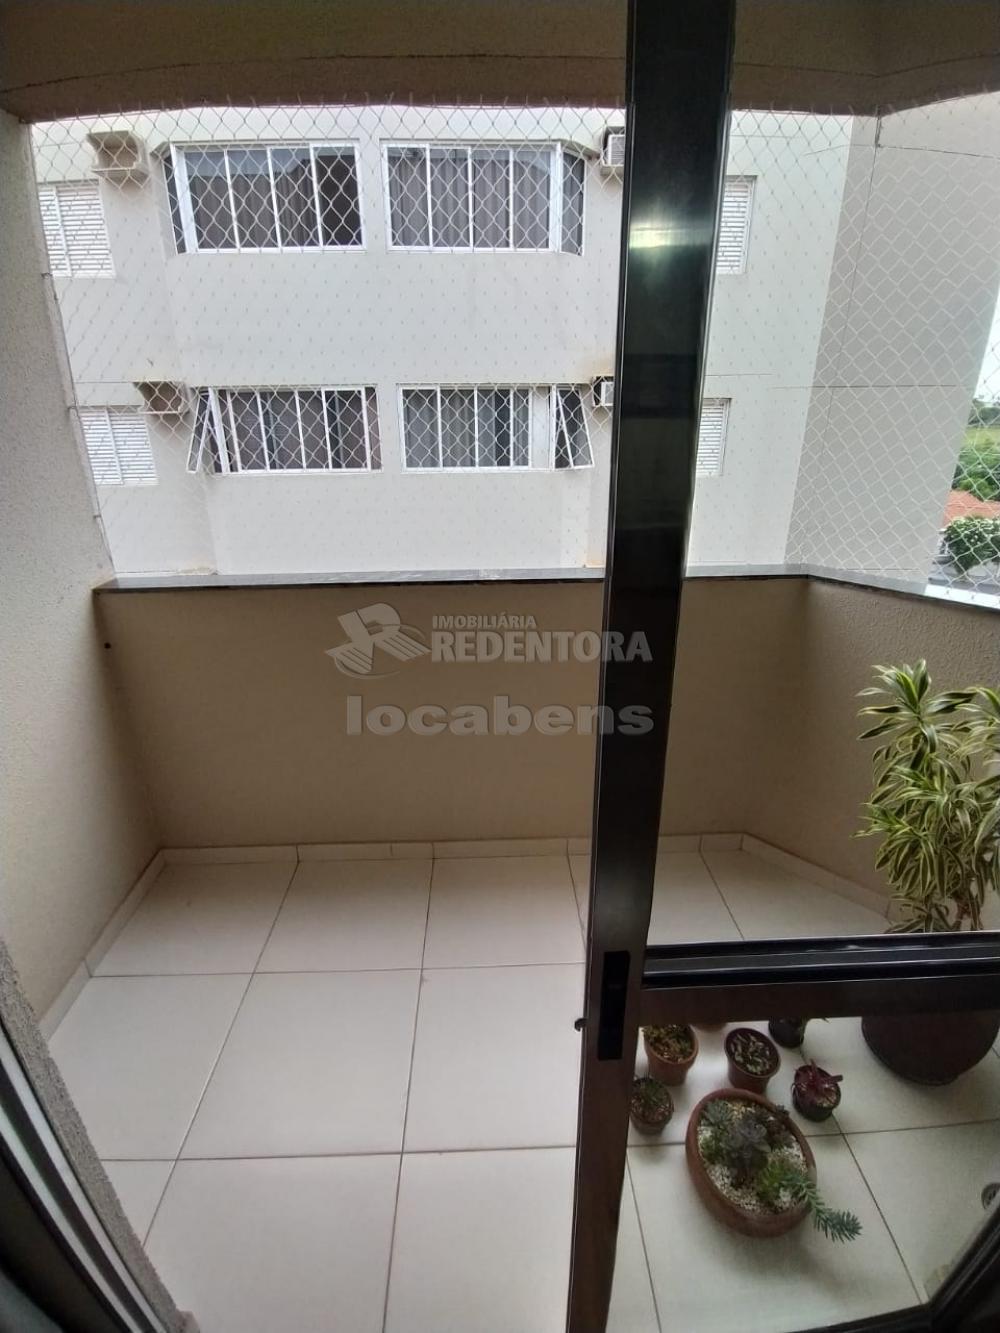 Comprar Apartamento / Padrão em São José do Rio Preto R$ 220.000,00 - Foto 4